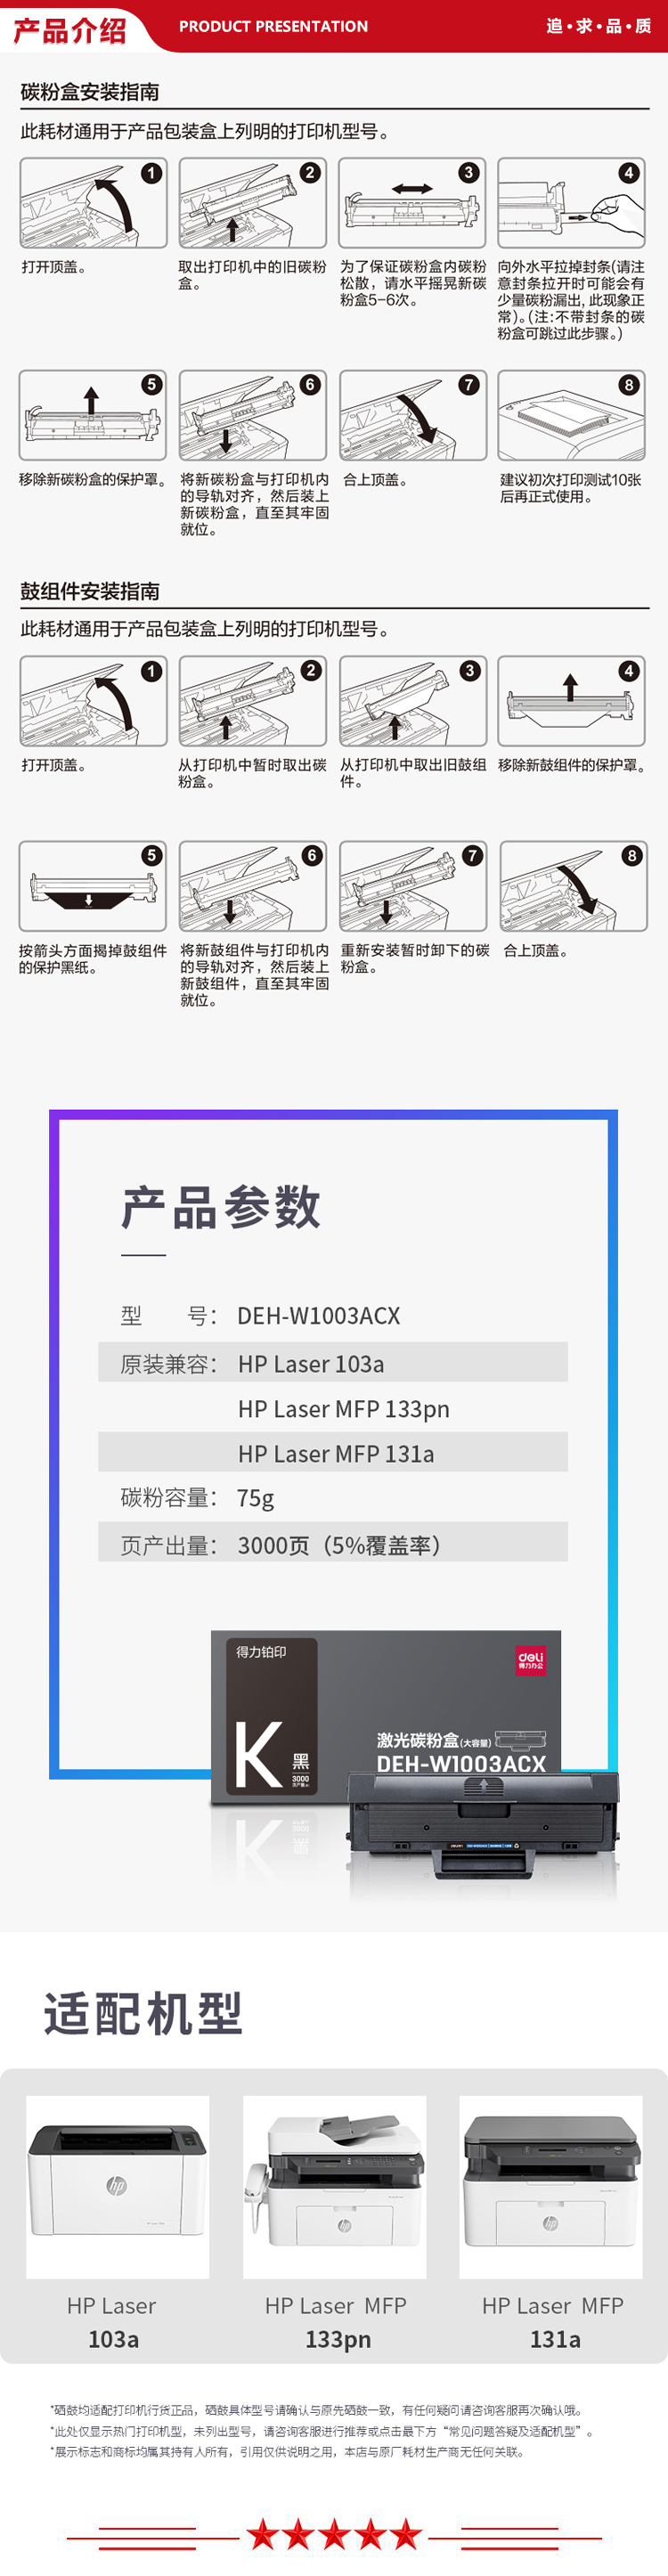 DEH-W1003ACX-.jpg